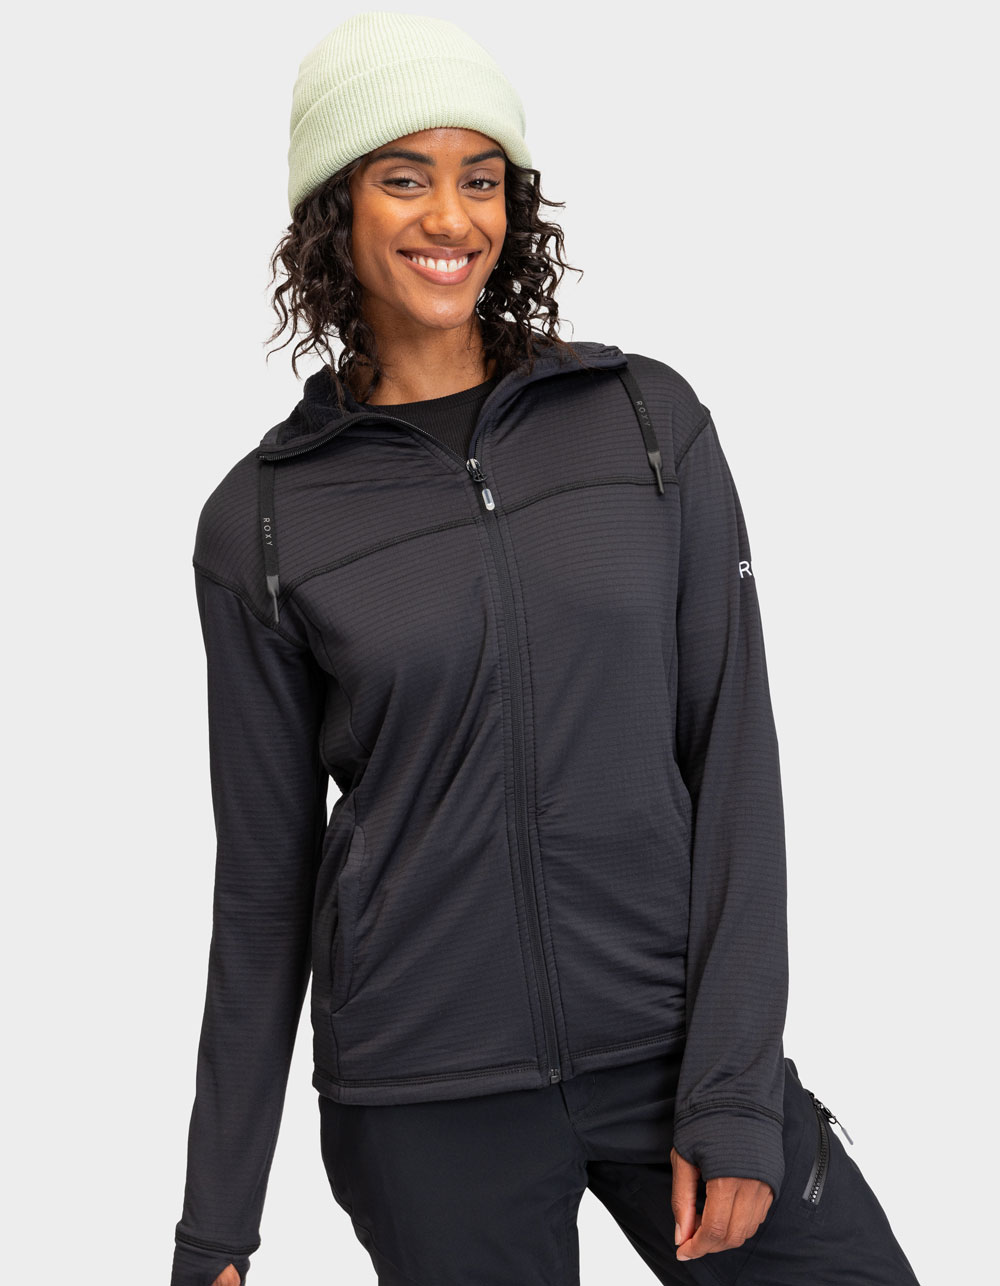 ROXY Vertere Womens Technical Zip-Up Fleece